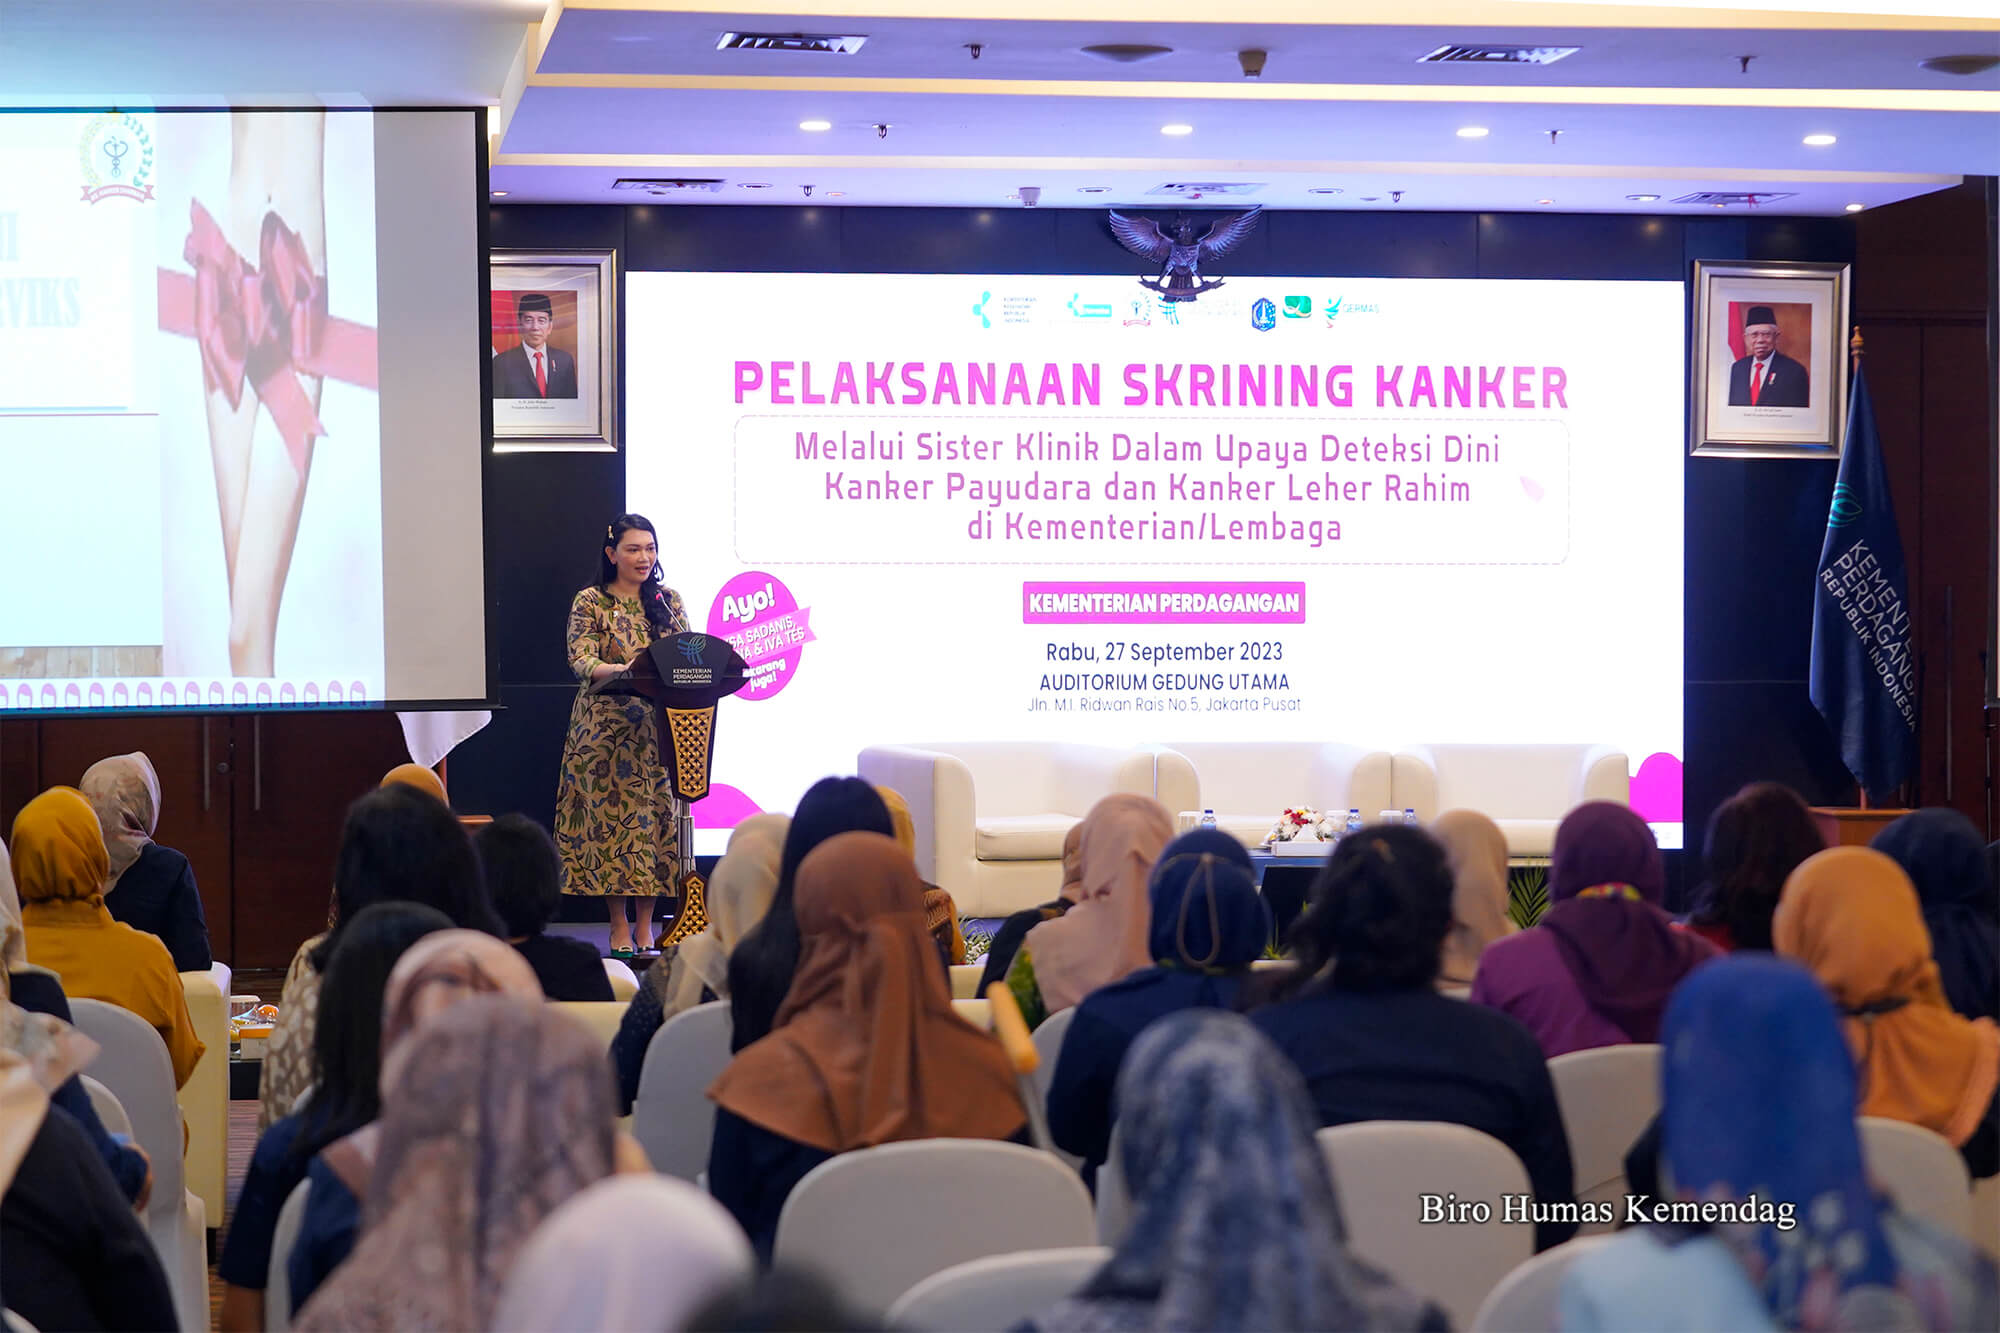 Kementerian Perdagangan bekerja sama dengan Kementerian Kesehatan menyelenggarakan seminar kesehatan dan pemeriksaan payudara klinis serta kanker serviks di lingkungan Kementerian Perdagangan, Jakarta, Rabu (27 Sep). Acara ini dibuka oleh Penasihat Dharma Wanita Persatuan Kementerian Perdagangan, Lili Marpaung Sambuaga.